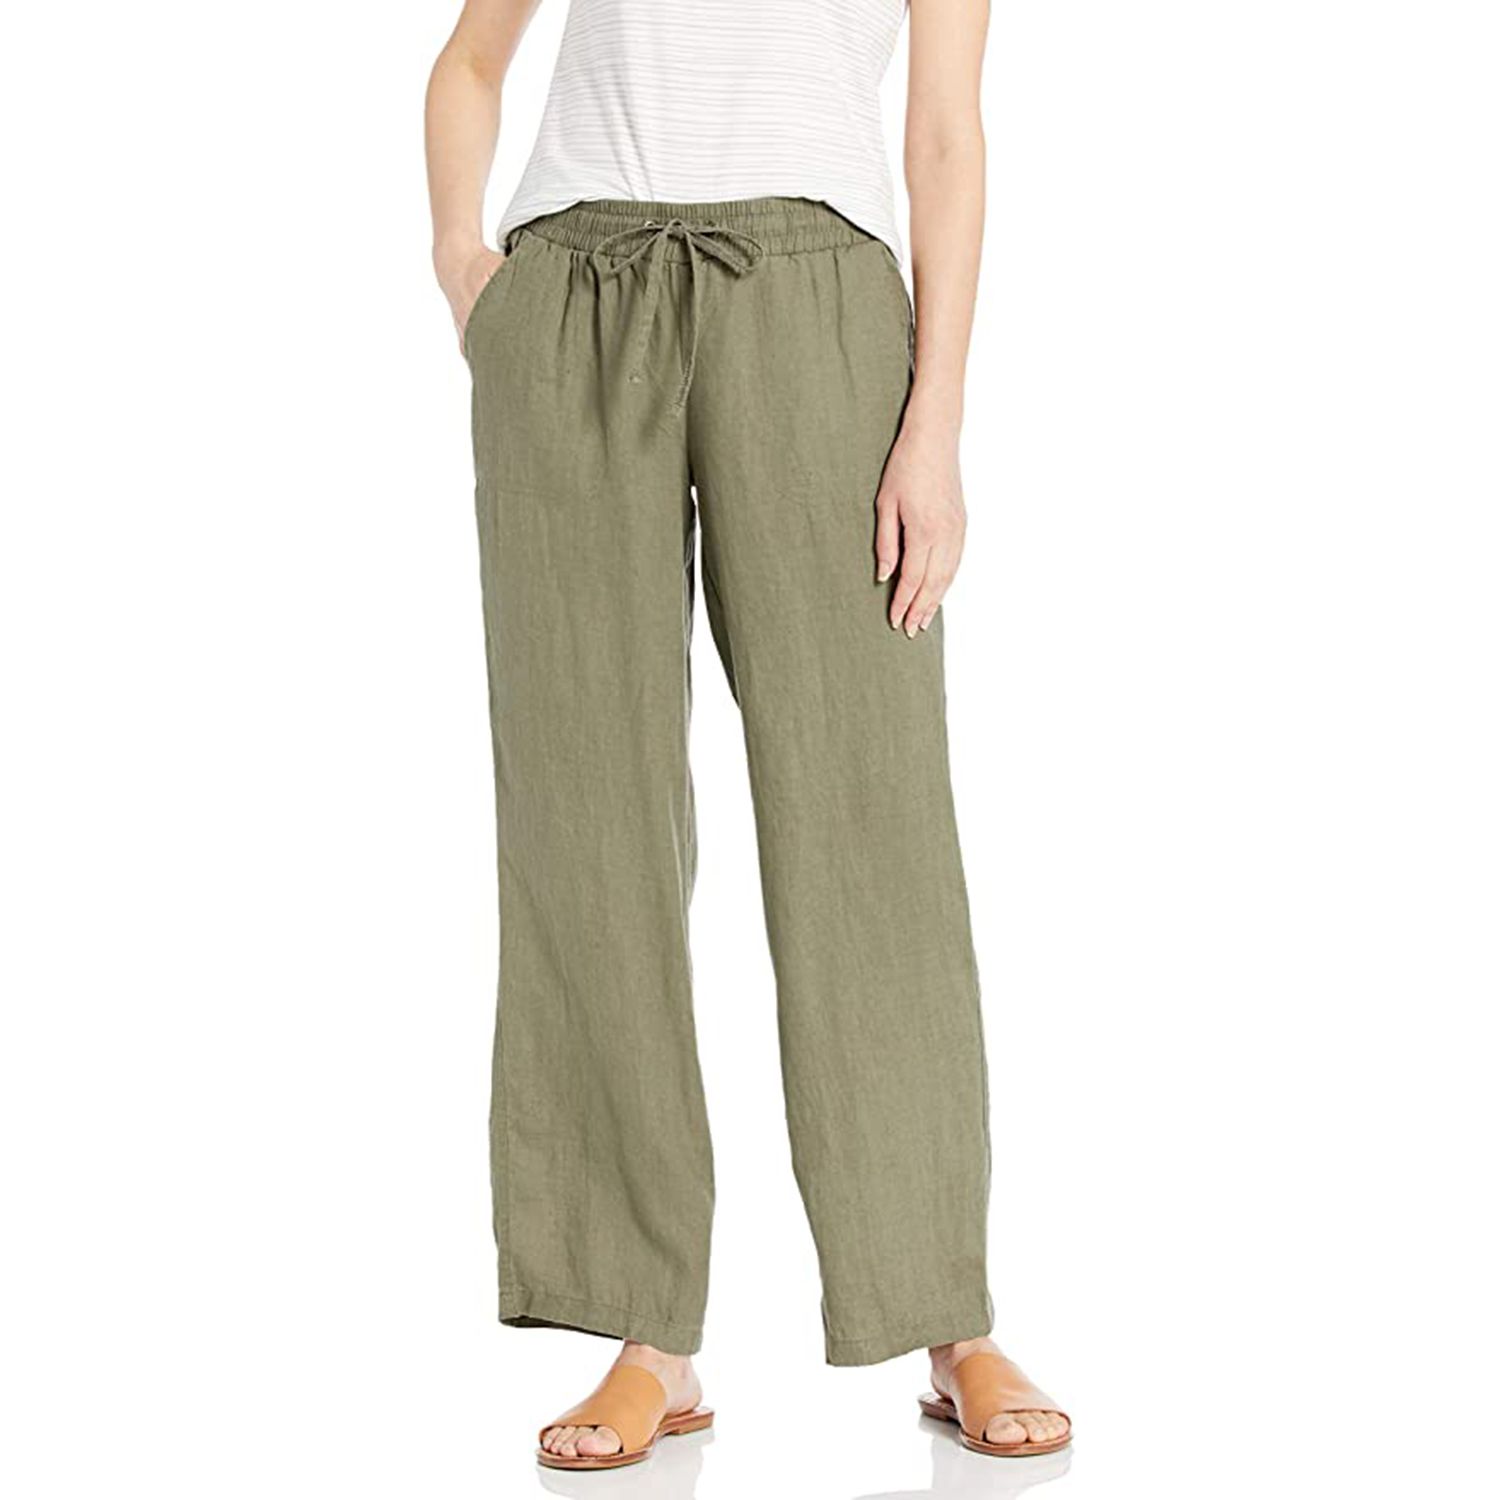 Linen pants women/linen pants/Loose linen pants/Tapered linen pants with pockets/Linen pants elastic waistband/Women linen trousers